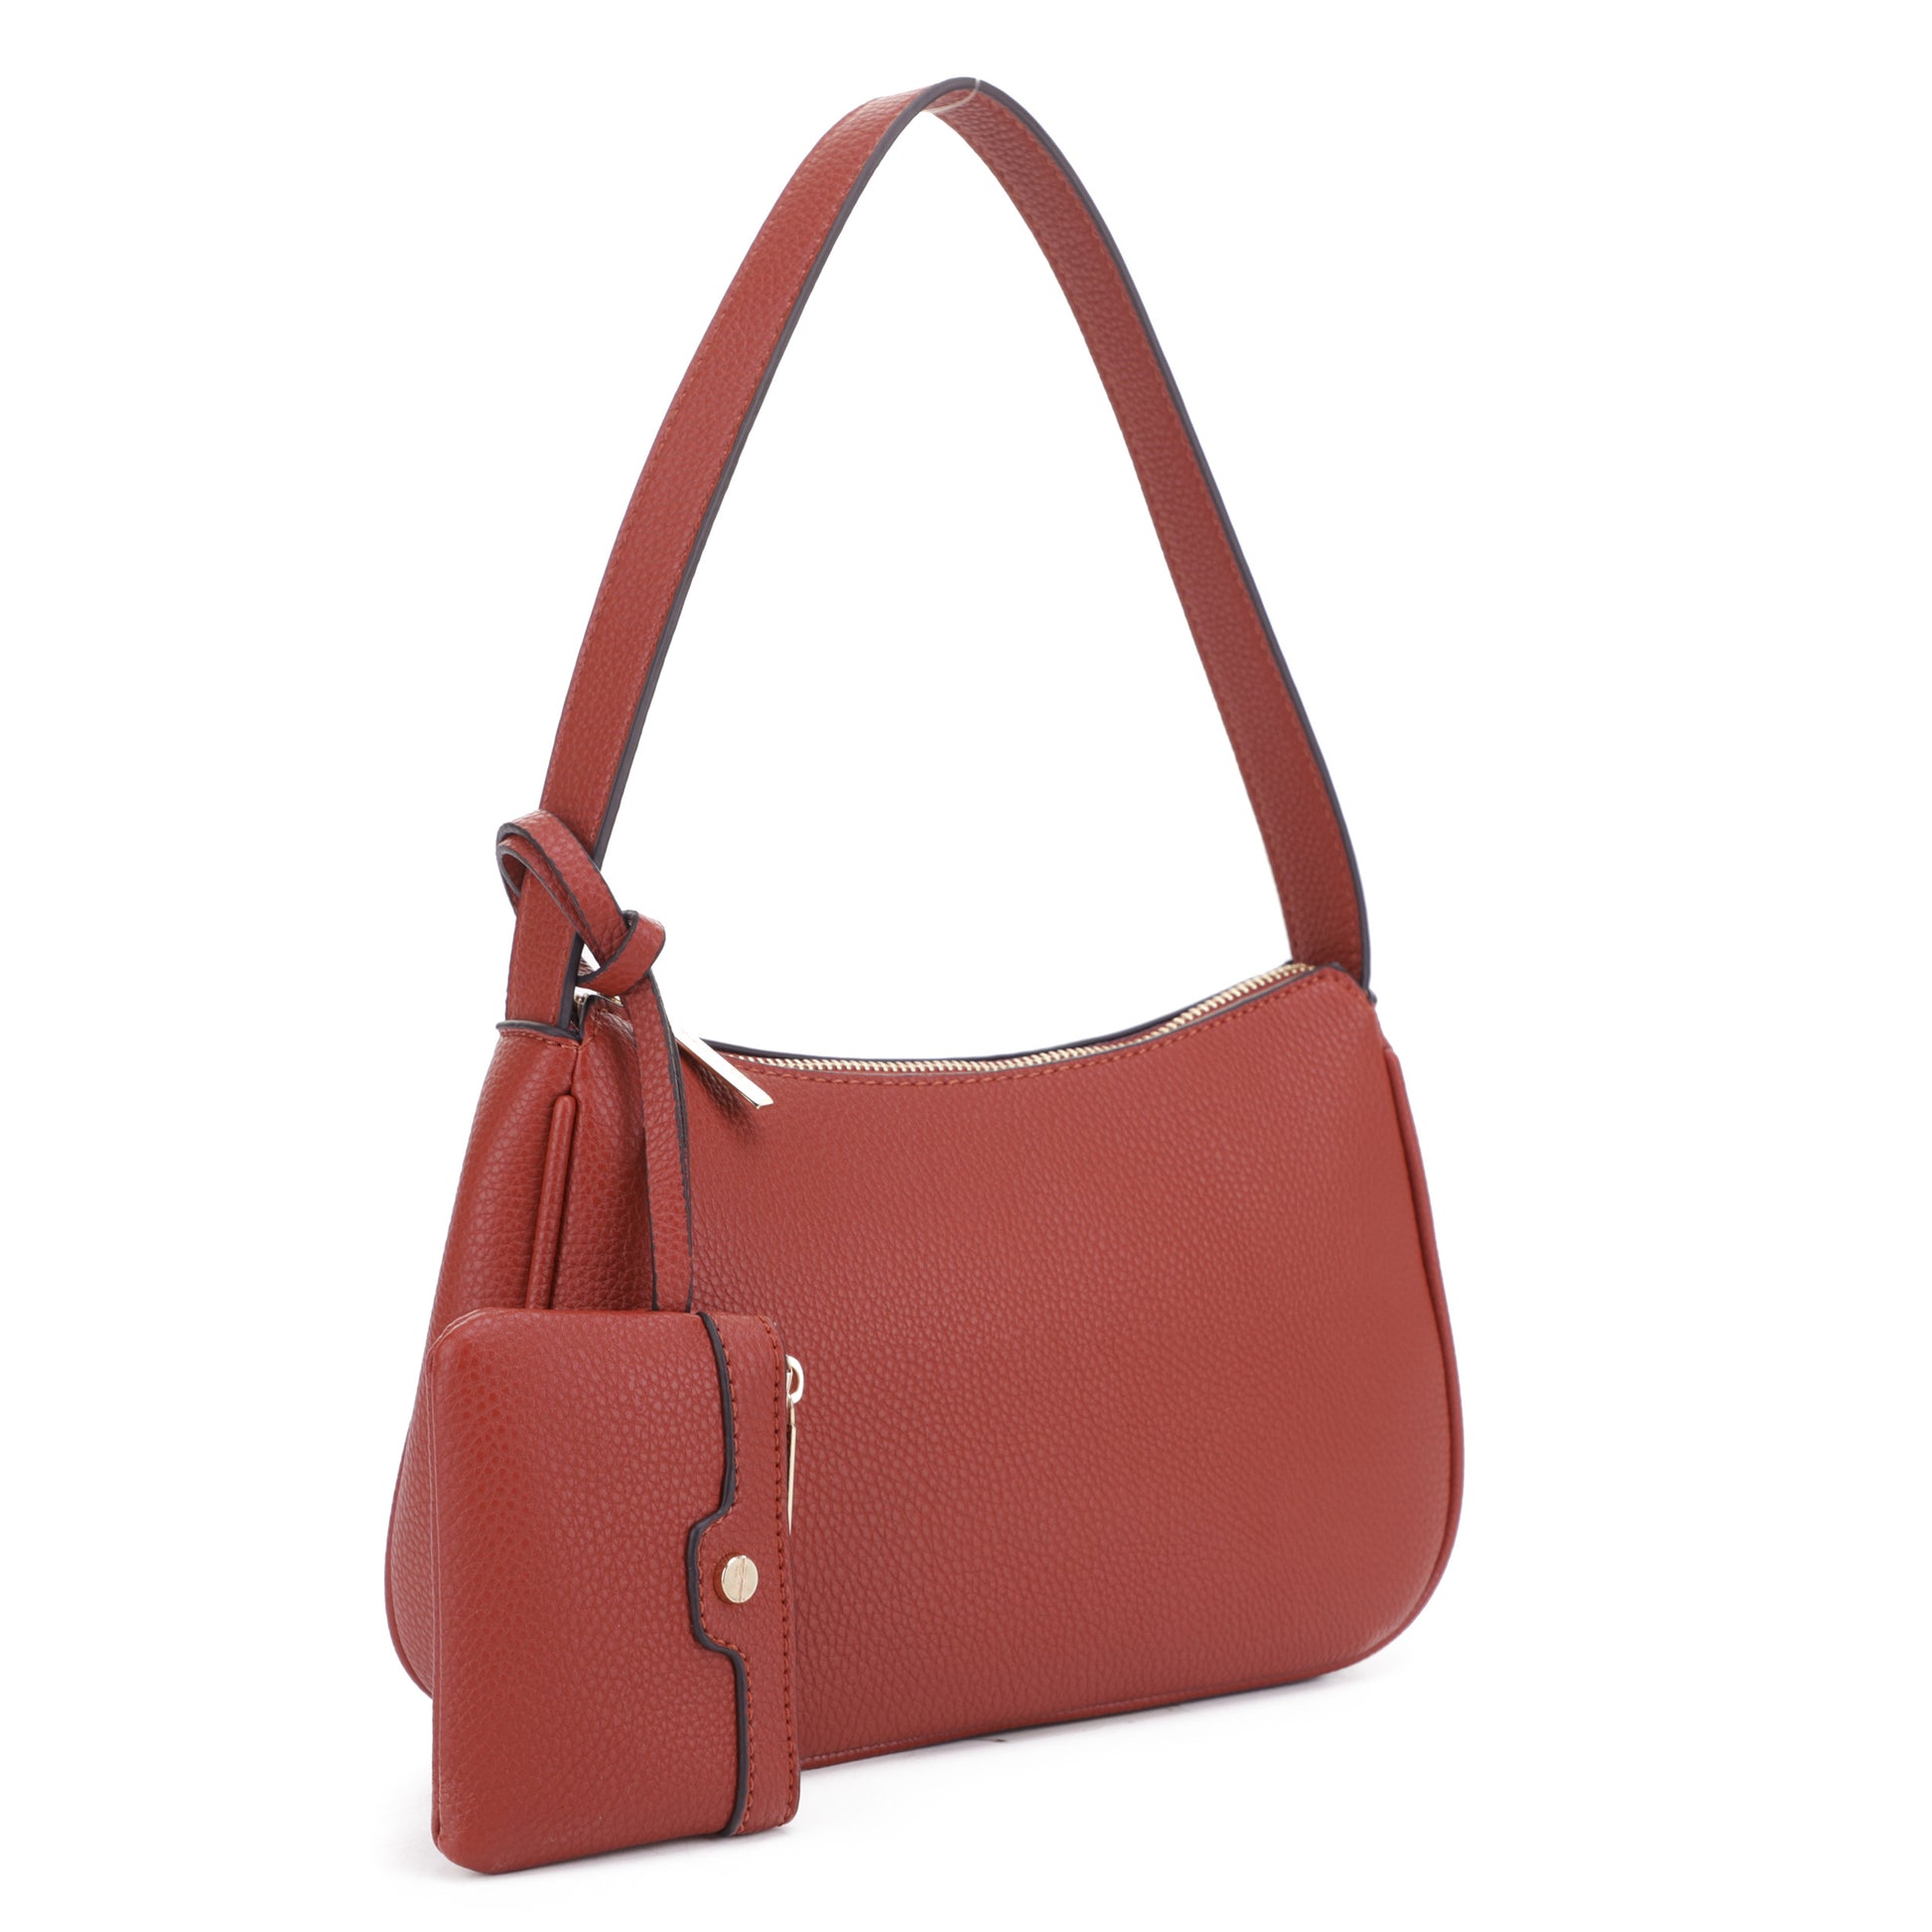 Baguette leather handbag